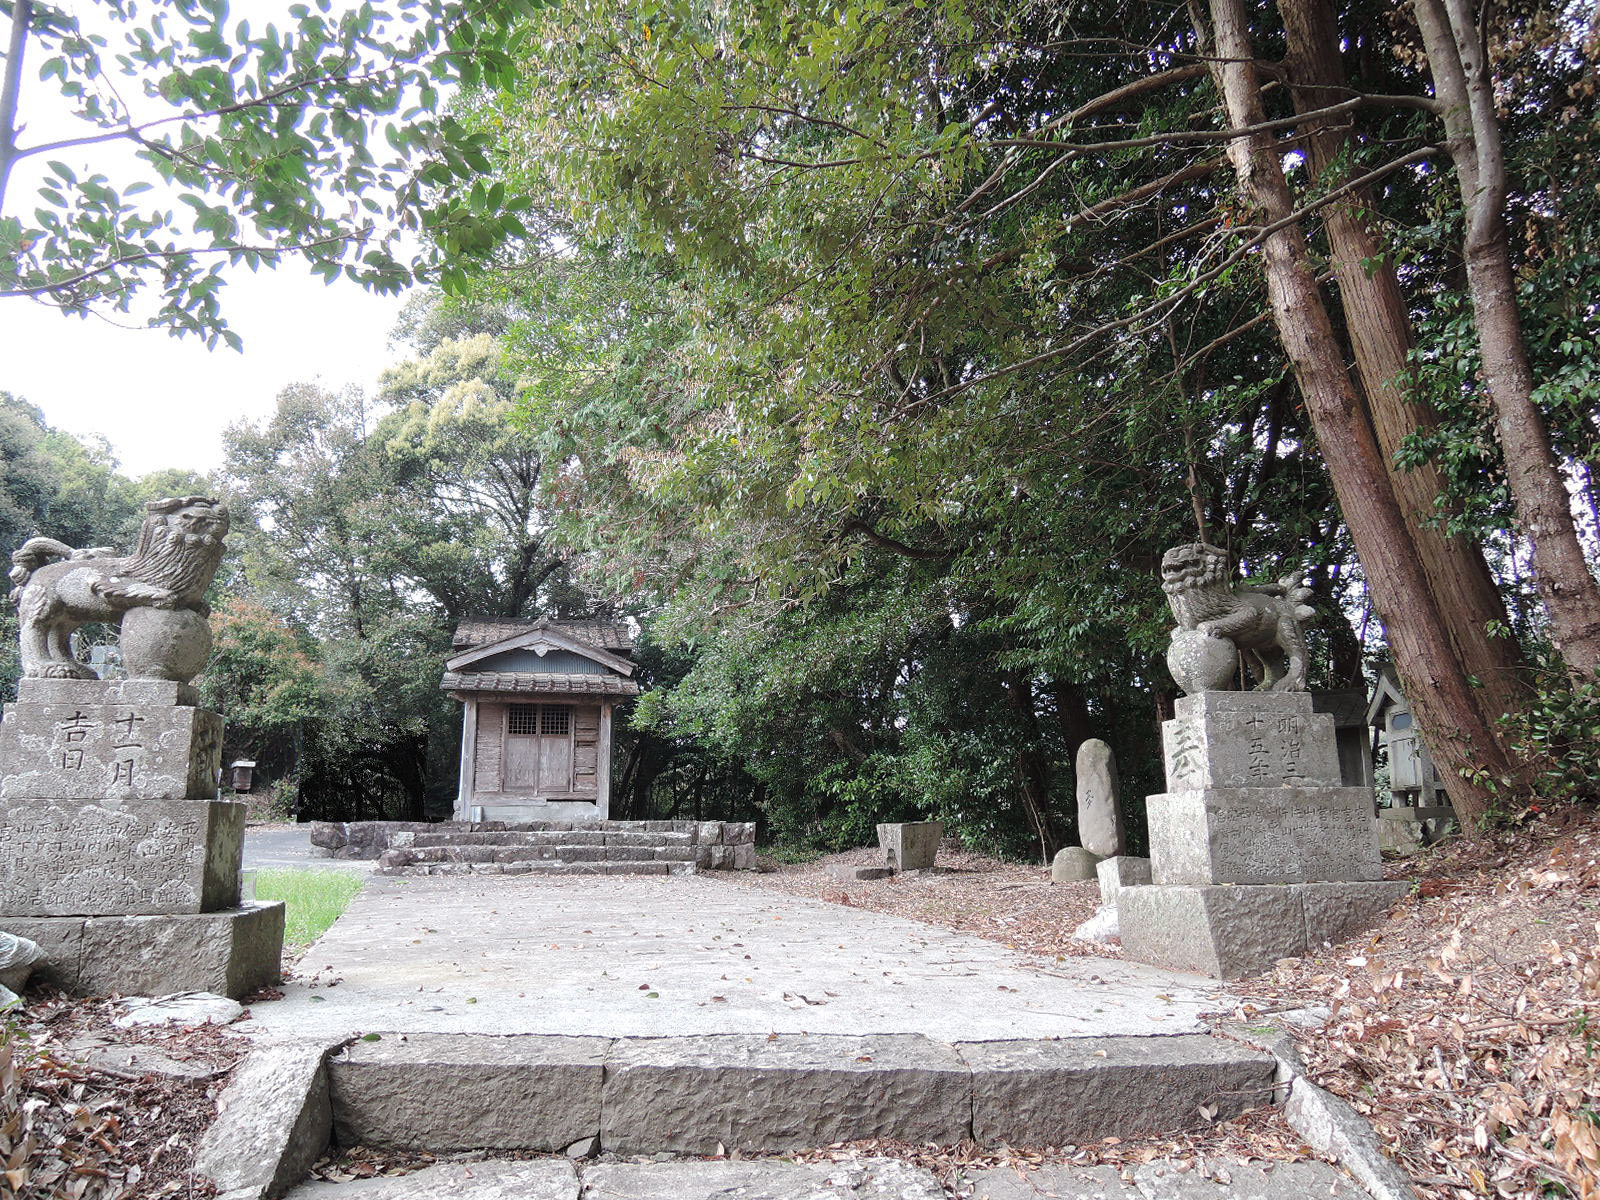 廃殿となった竹島神社の境内。階段を上り詰めた所から本殿を撮影しており、手前には階段の最後の１段があり、その左右には狛犬が写っている。右の犬の後ろに夢の碑が見える。